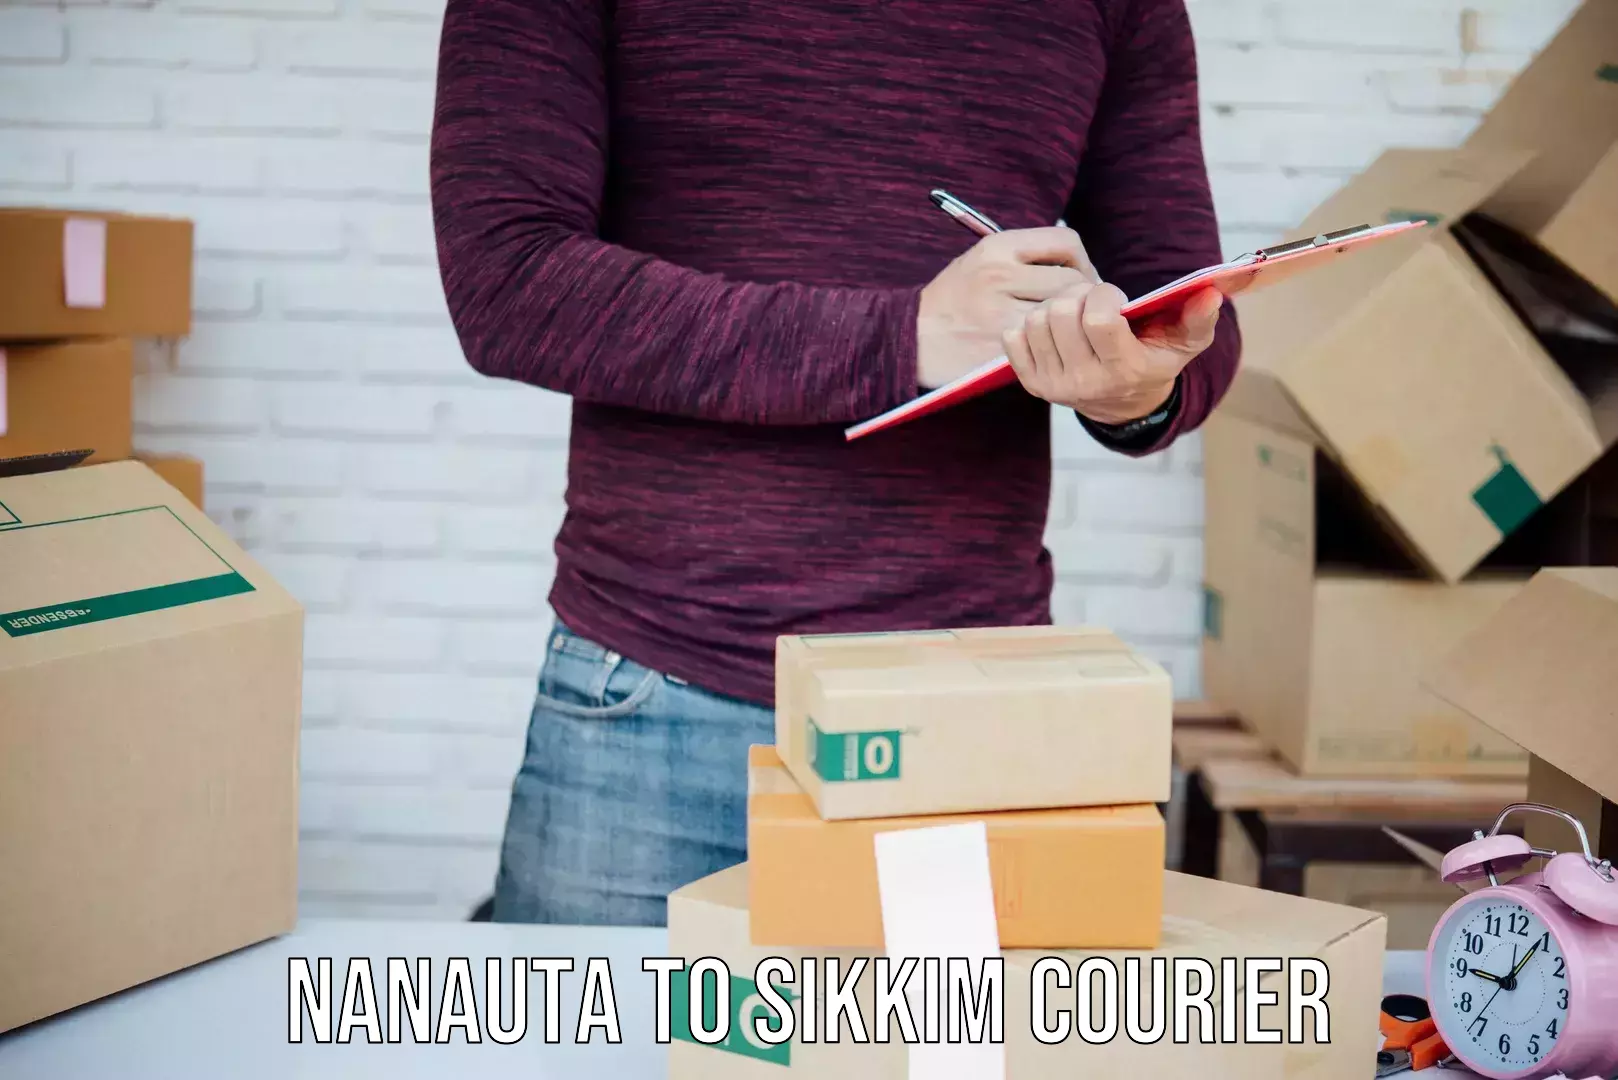 Customer-centric shipping in Nanauta to Namchi